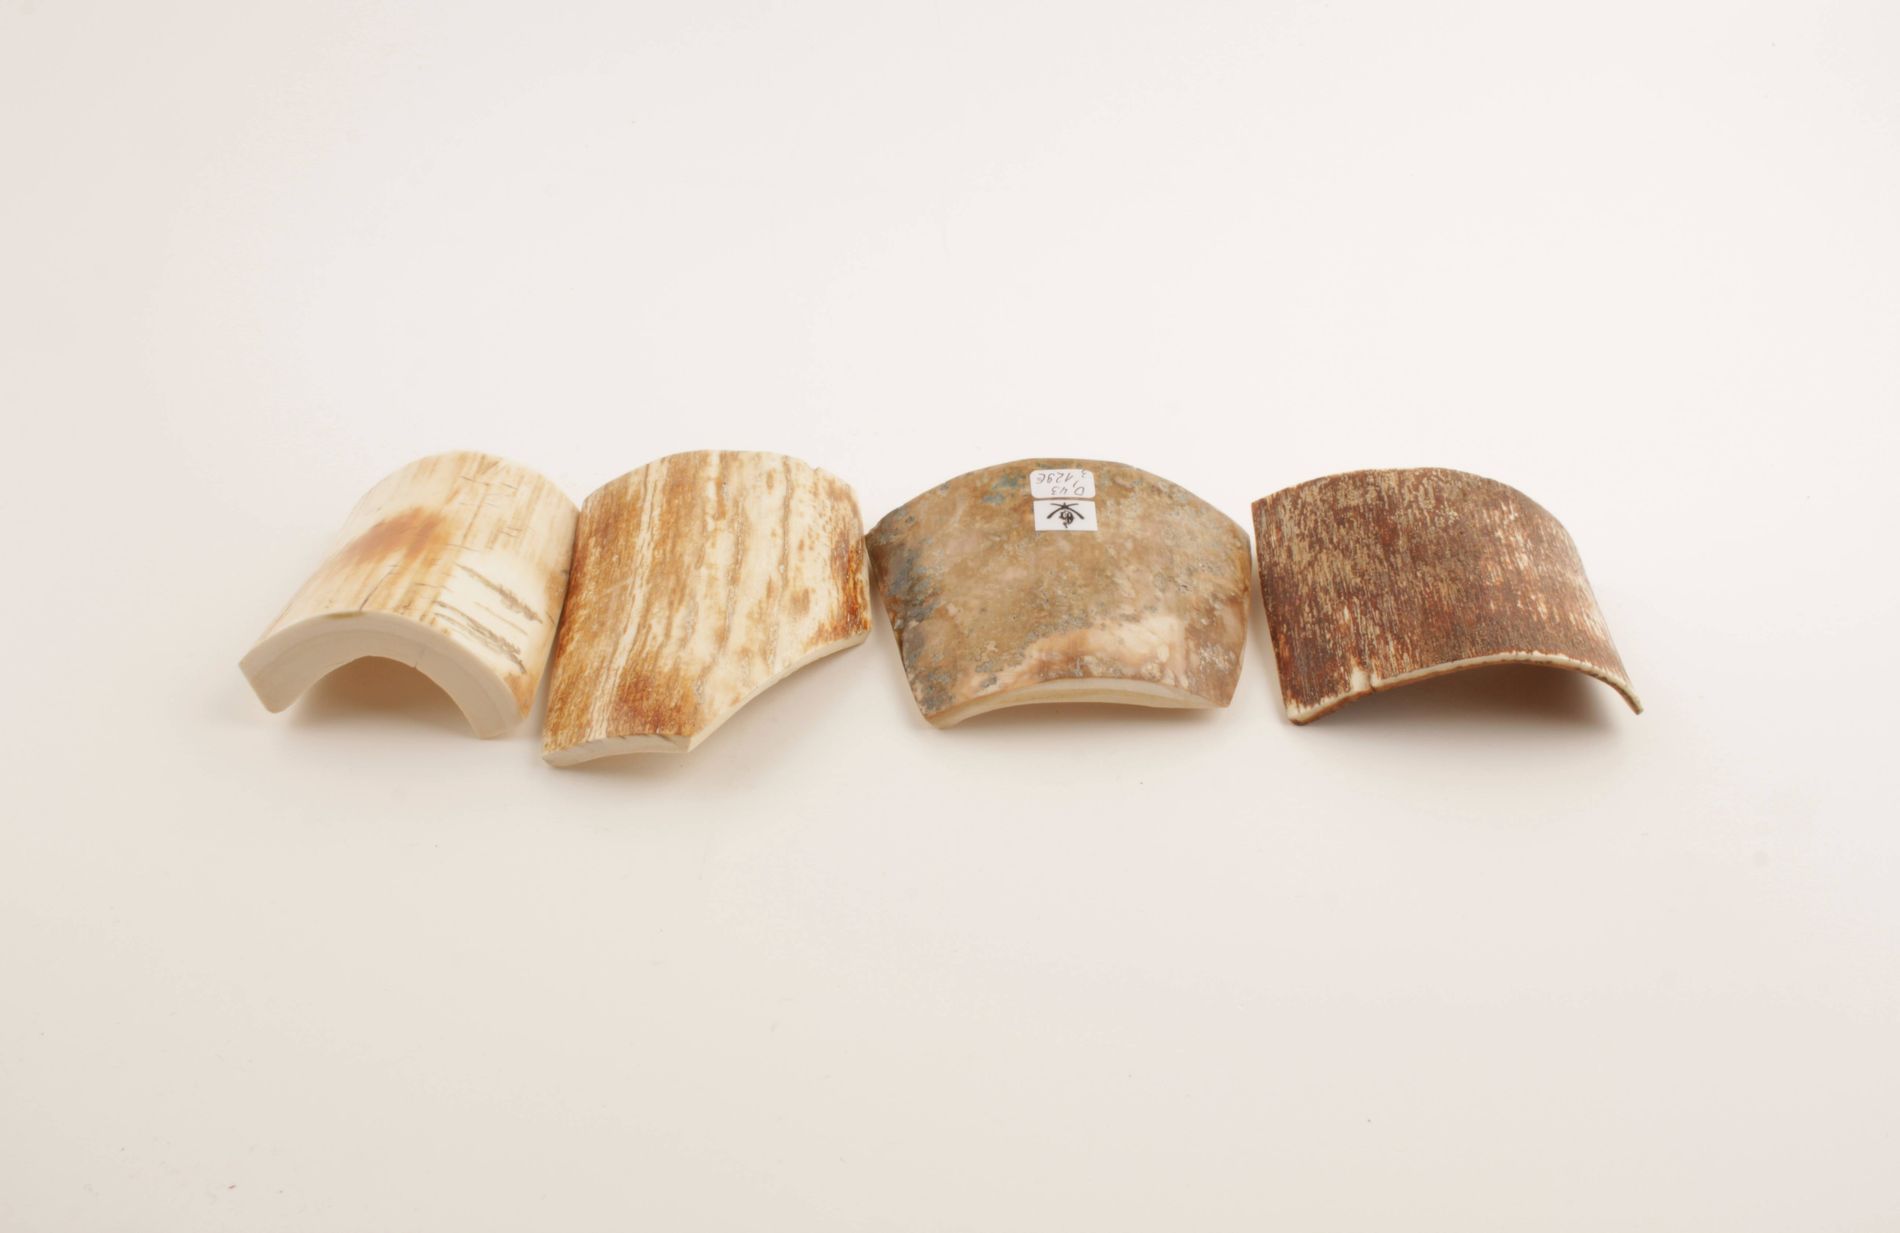 Beige-brown mammoth bark pieces